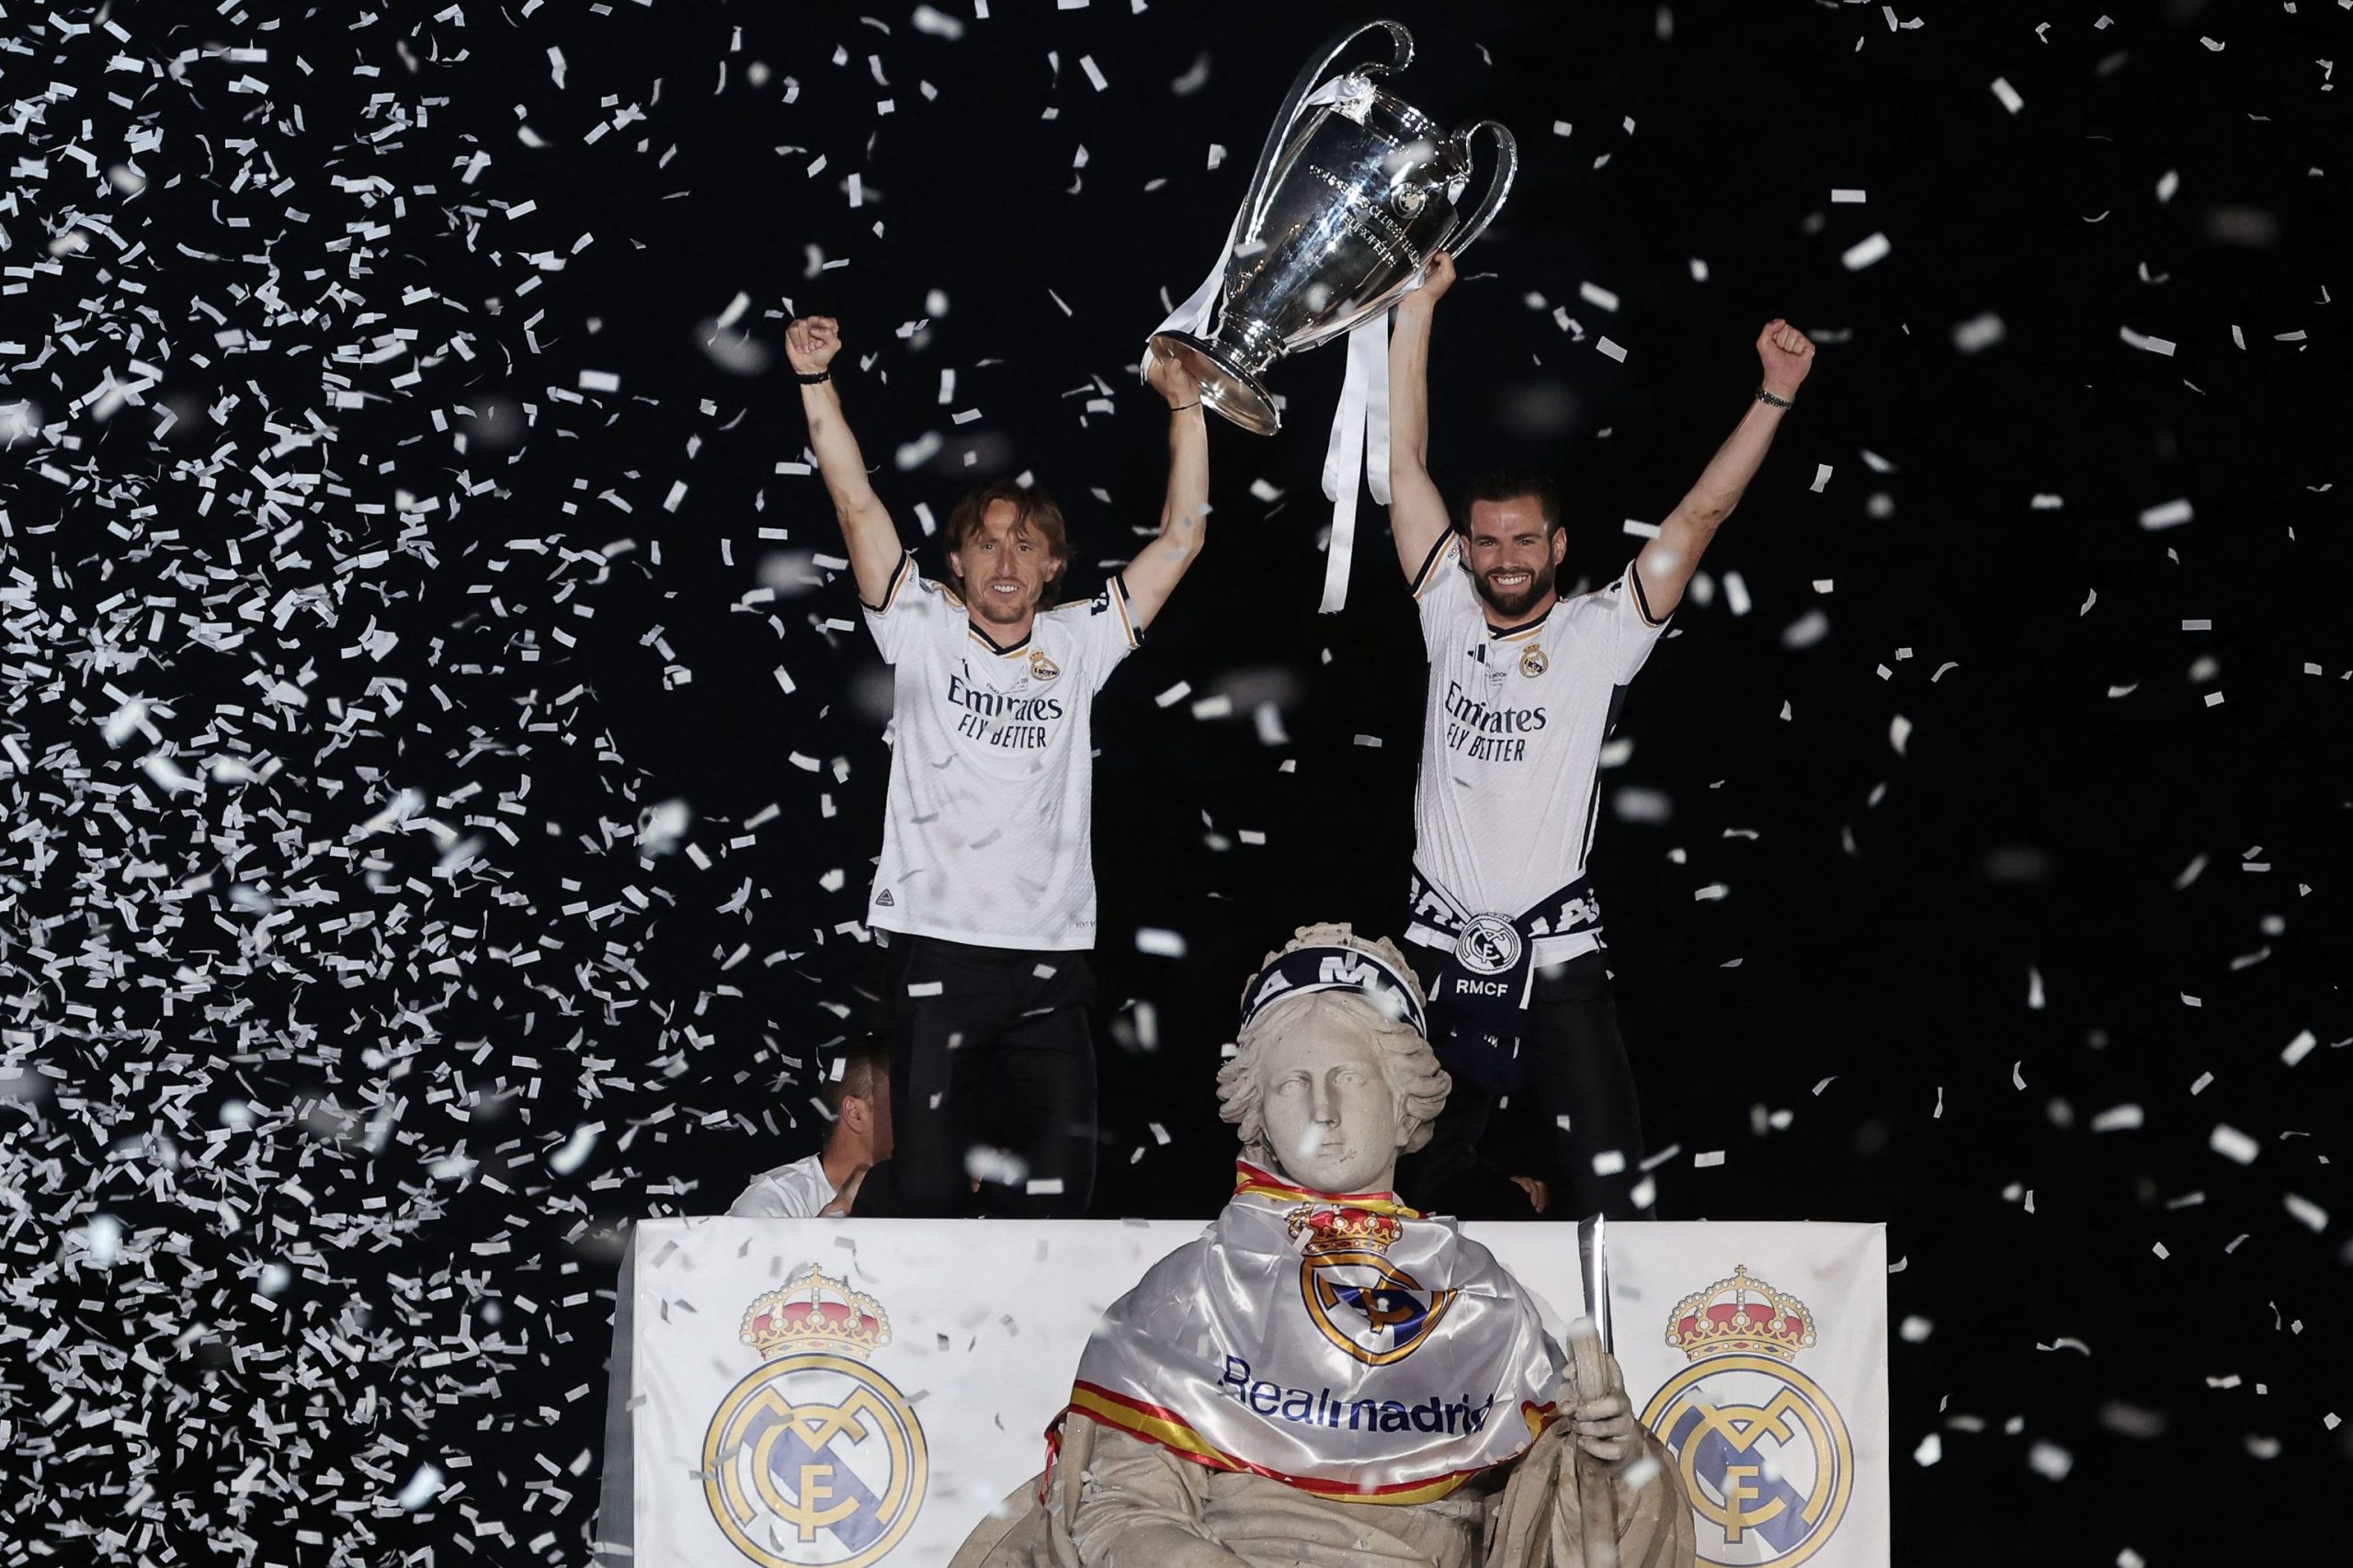 El adiós oficial del Real Madrid a Nacho tras 23 años de blanco: "Se va una de las grandes leyendas de nuestro club"